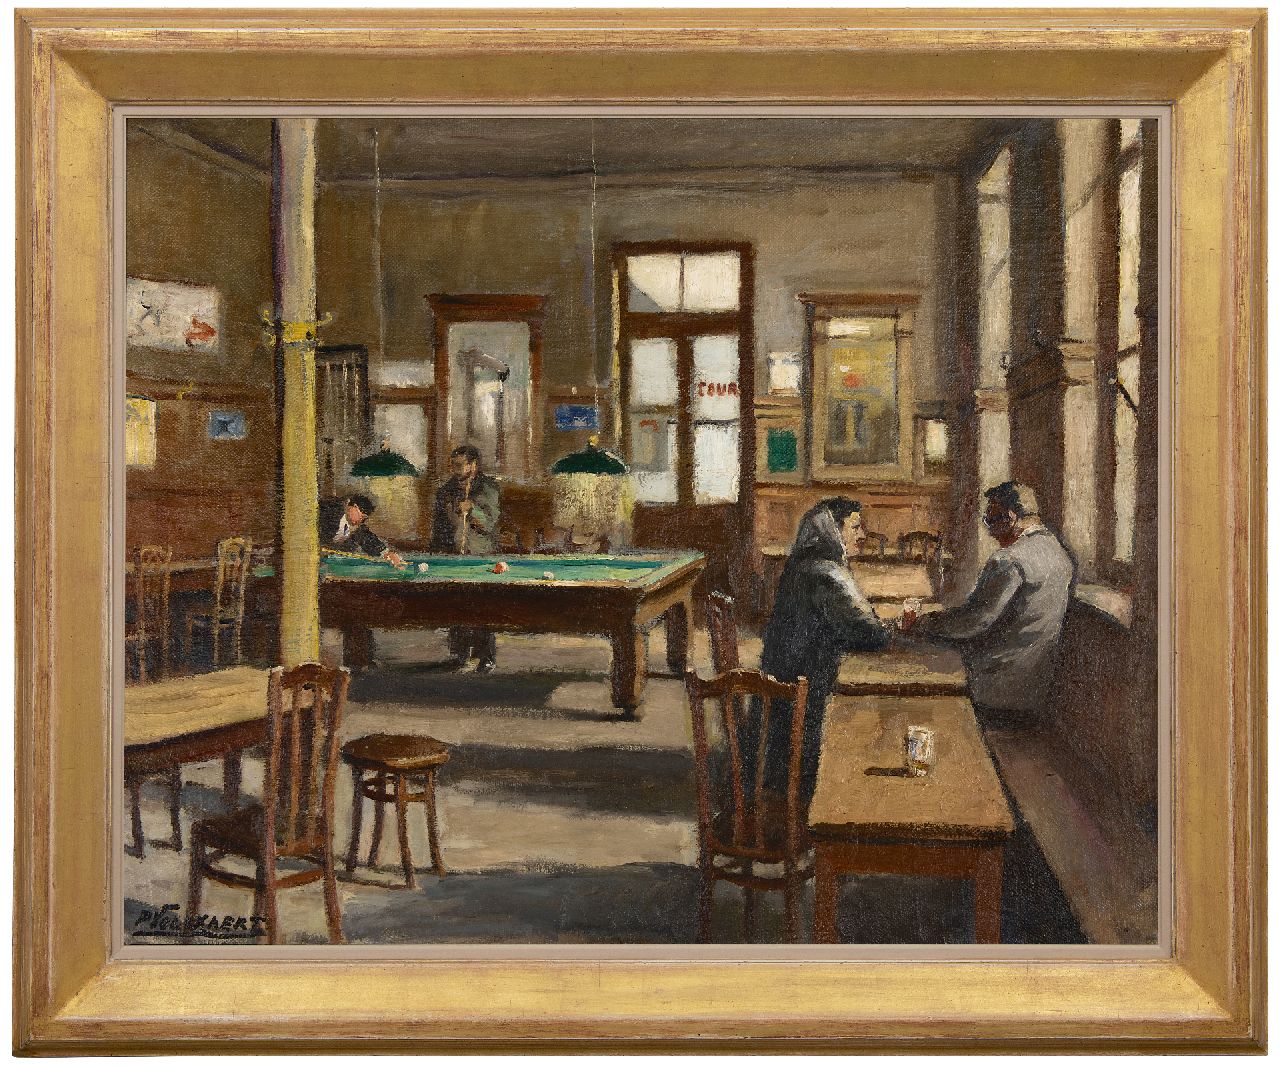 Volckaert P.  | Piet Volckaert | Schilderijen te koop aangeboden | De biljartzaal van café Le Lievekenshoek in Brussel, olieverf op doek 80,5 x 100,7 cm, gesigneerd linksonder en verso